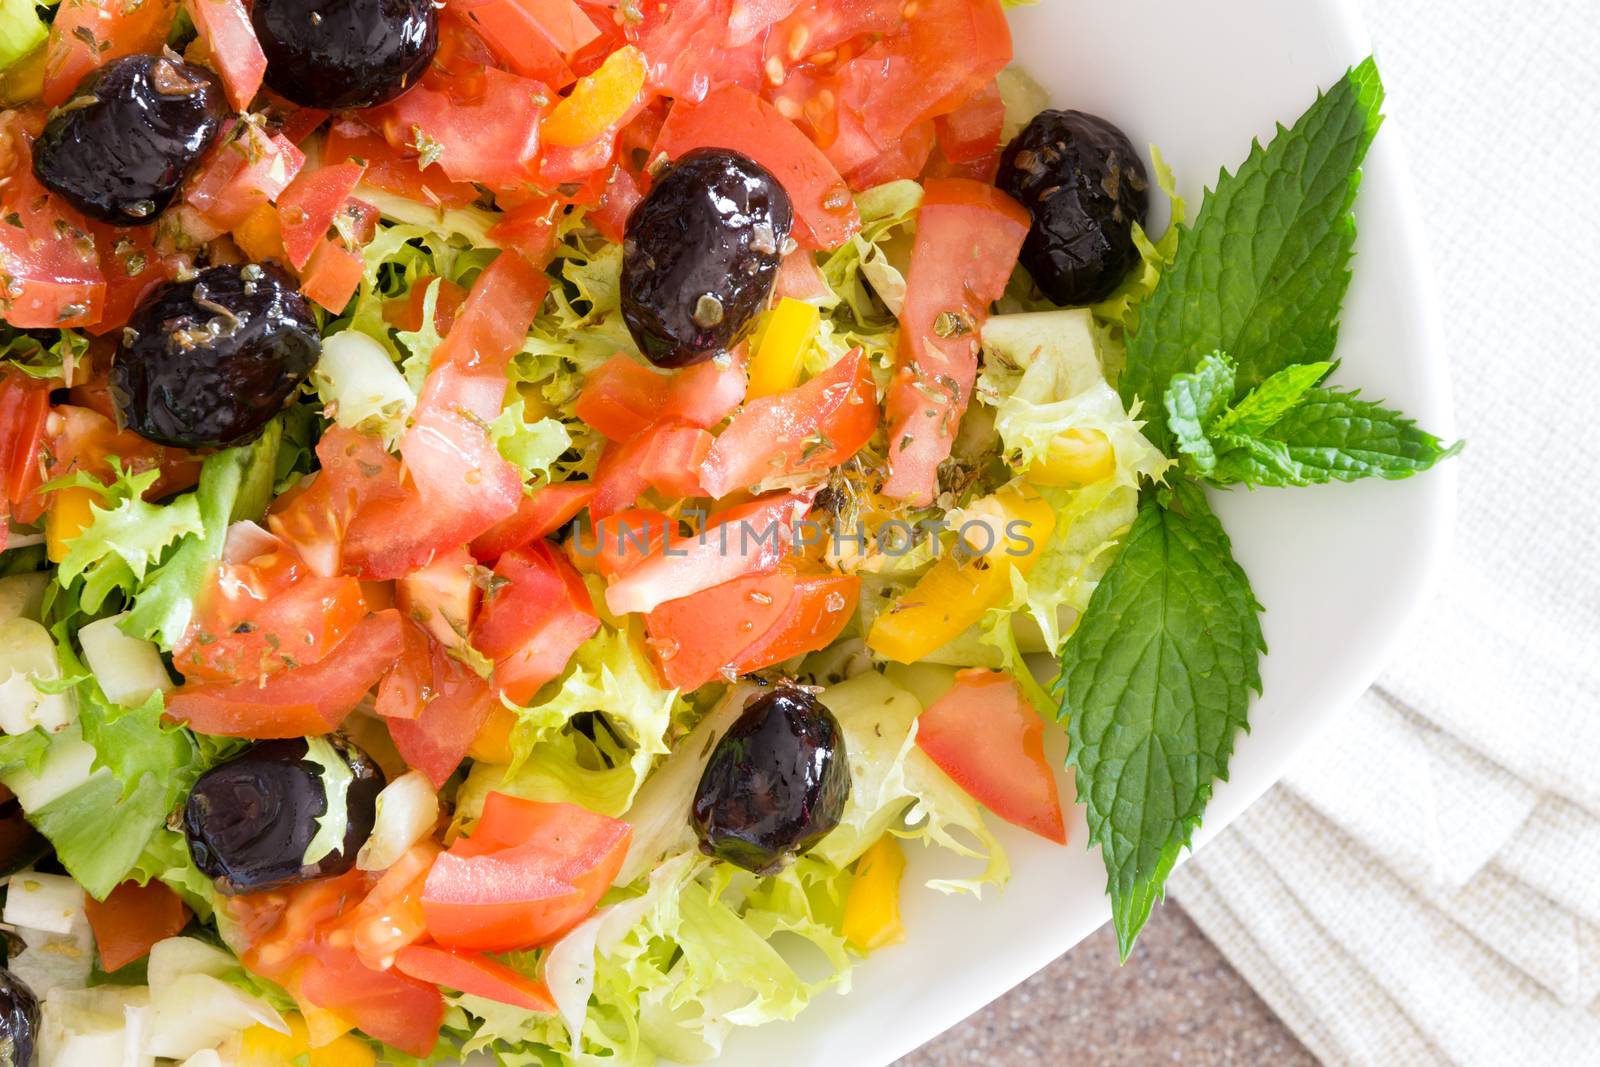 Healthy farm fresh Mediterranean salad by coskun